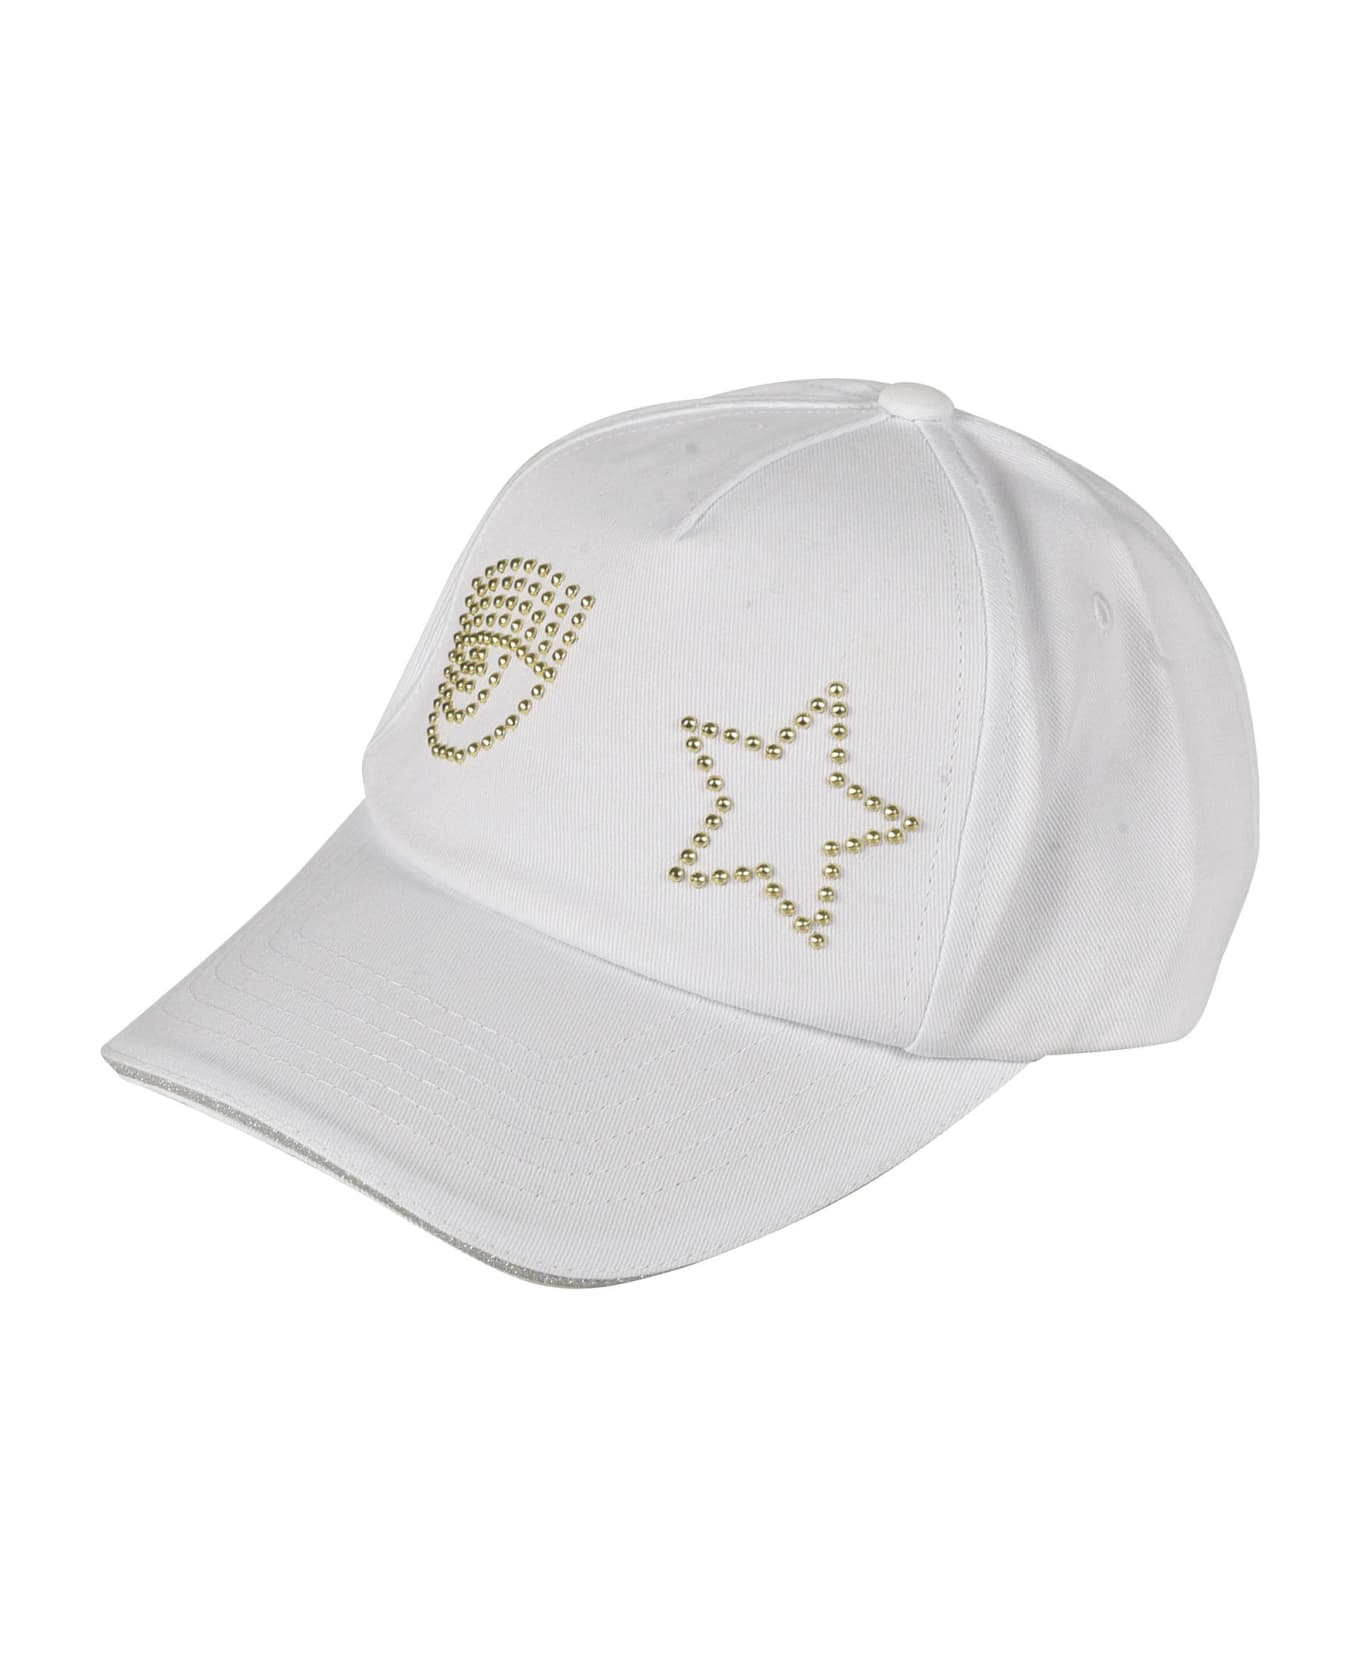 Chiara Ferragni Eye Star Cap - White 帽子